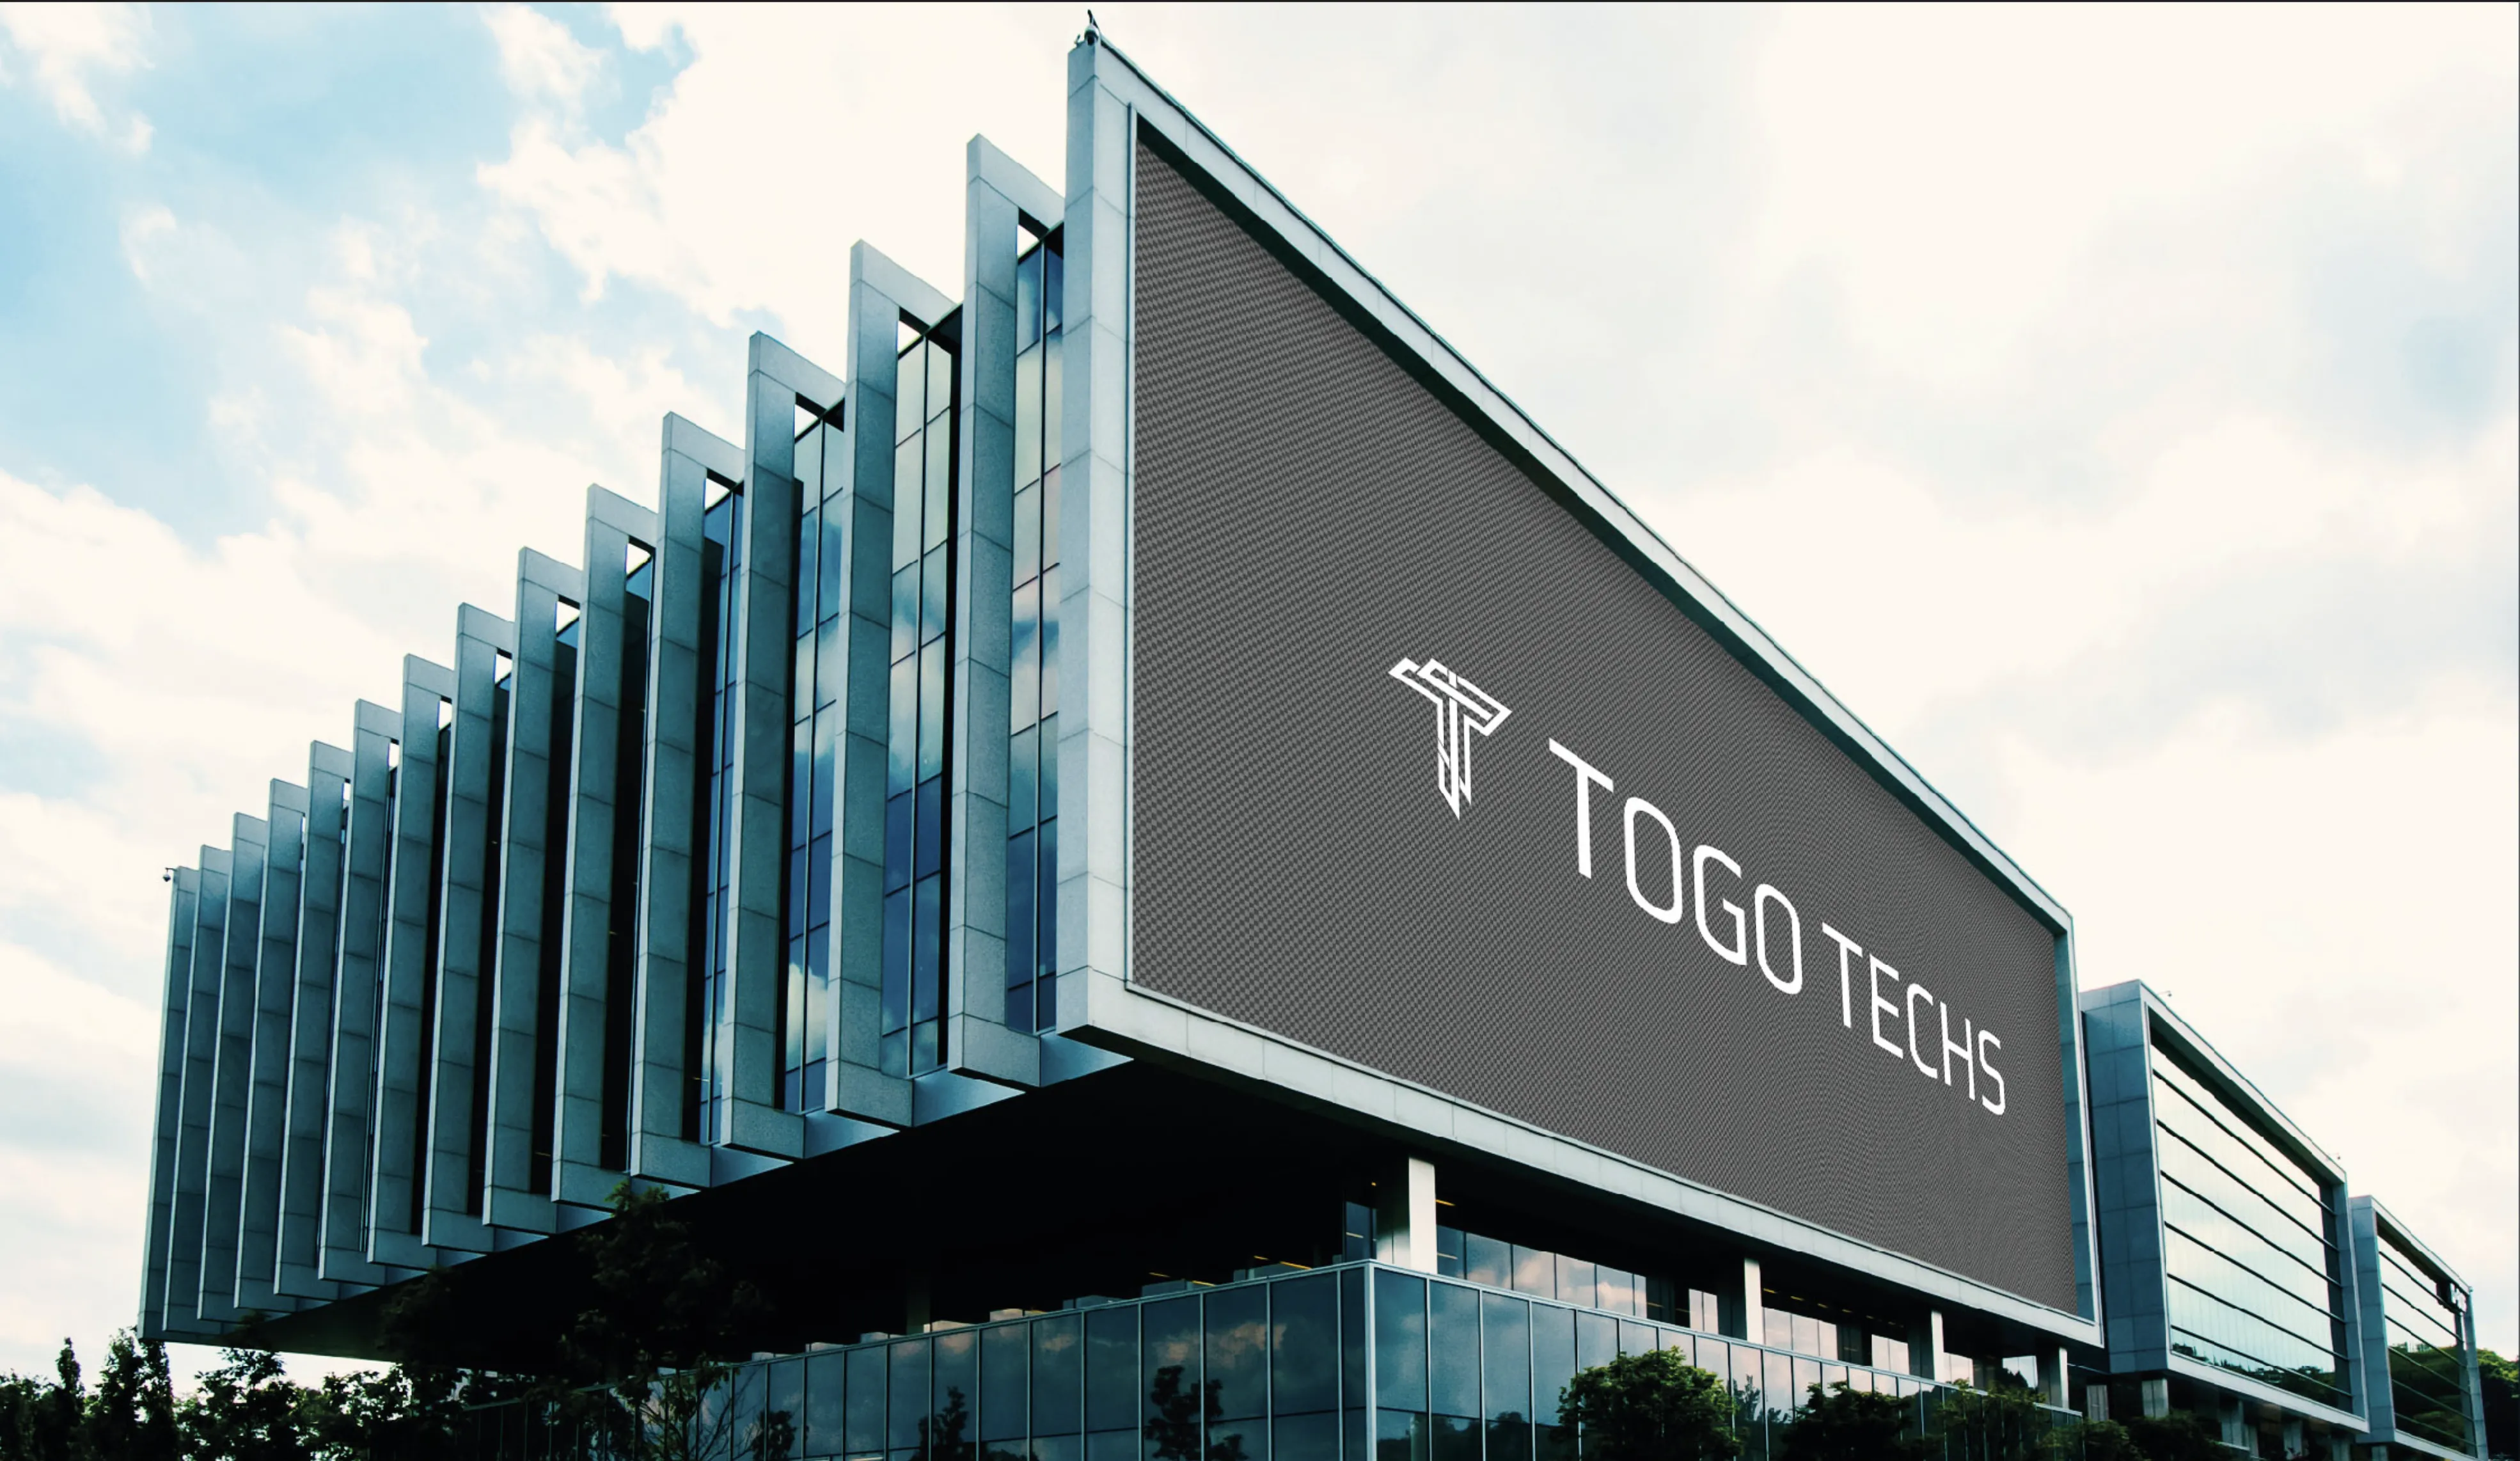 Togo Techs Yazılım Markalaşma Hizmeti